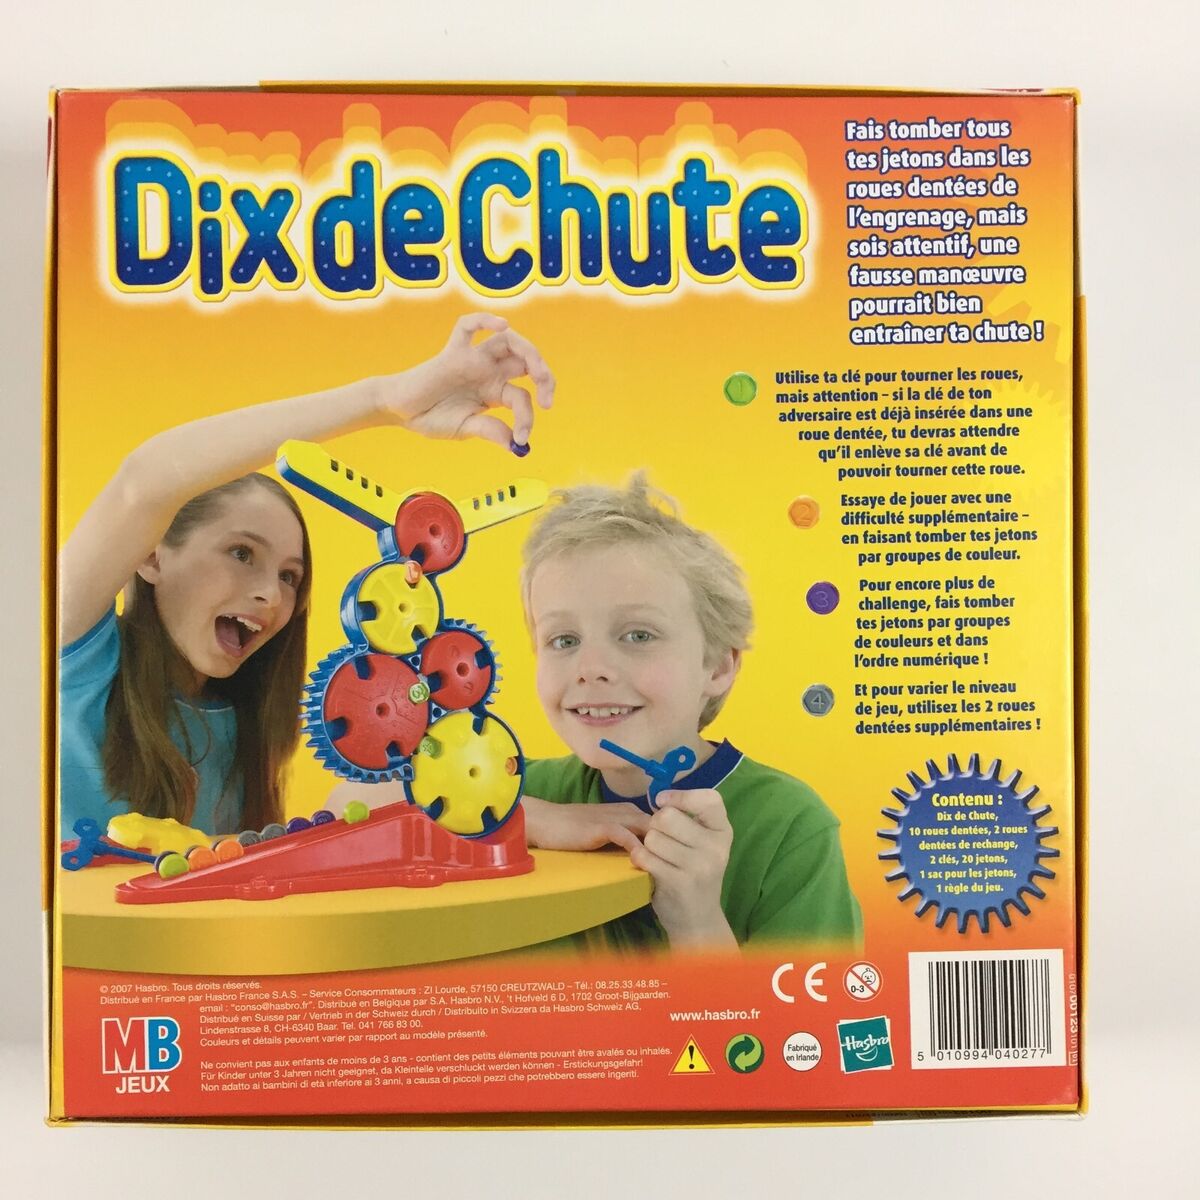 Dix de Chute - Jeu MB 1996 - jouets rétro jeux de société figurines et  objets vintage